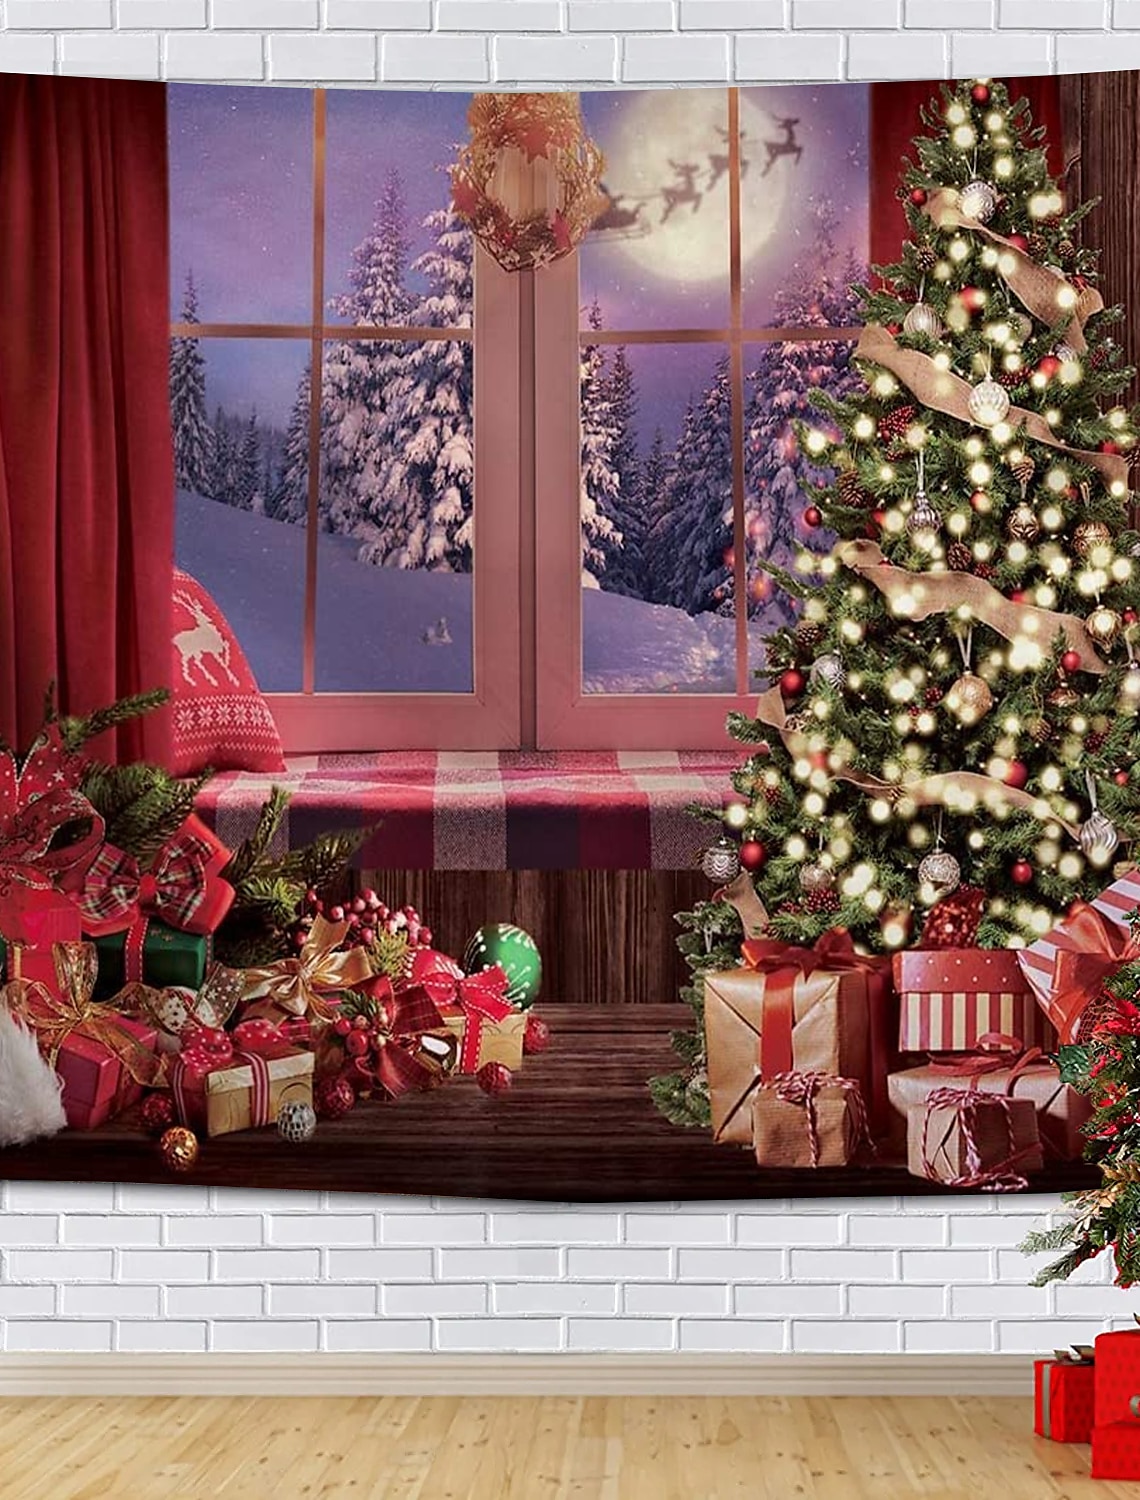 クリスマスオーナメント 雪の結晶と、ボタン雪を赤白でイメージしたオーナメント 通販